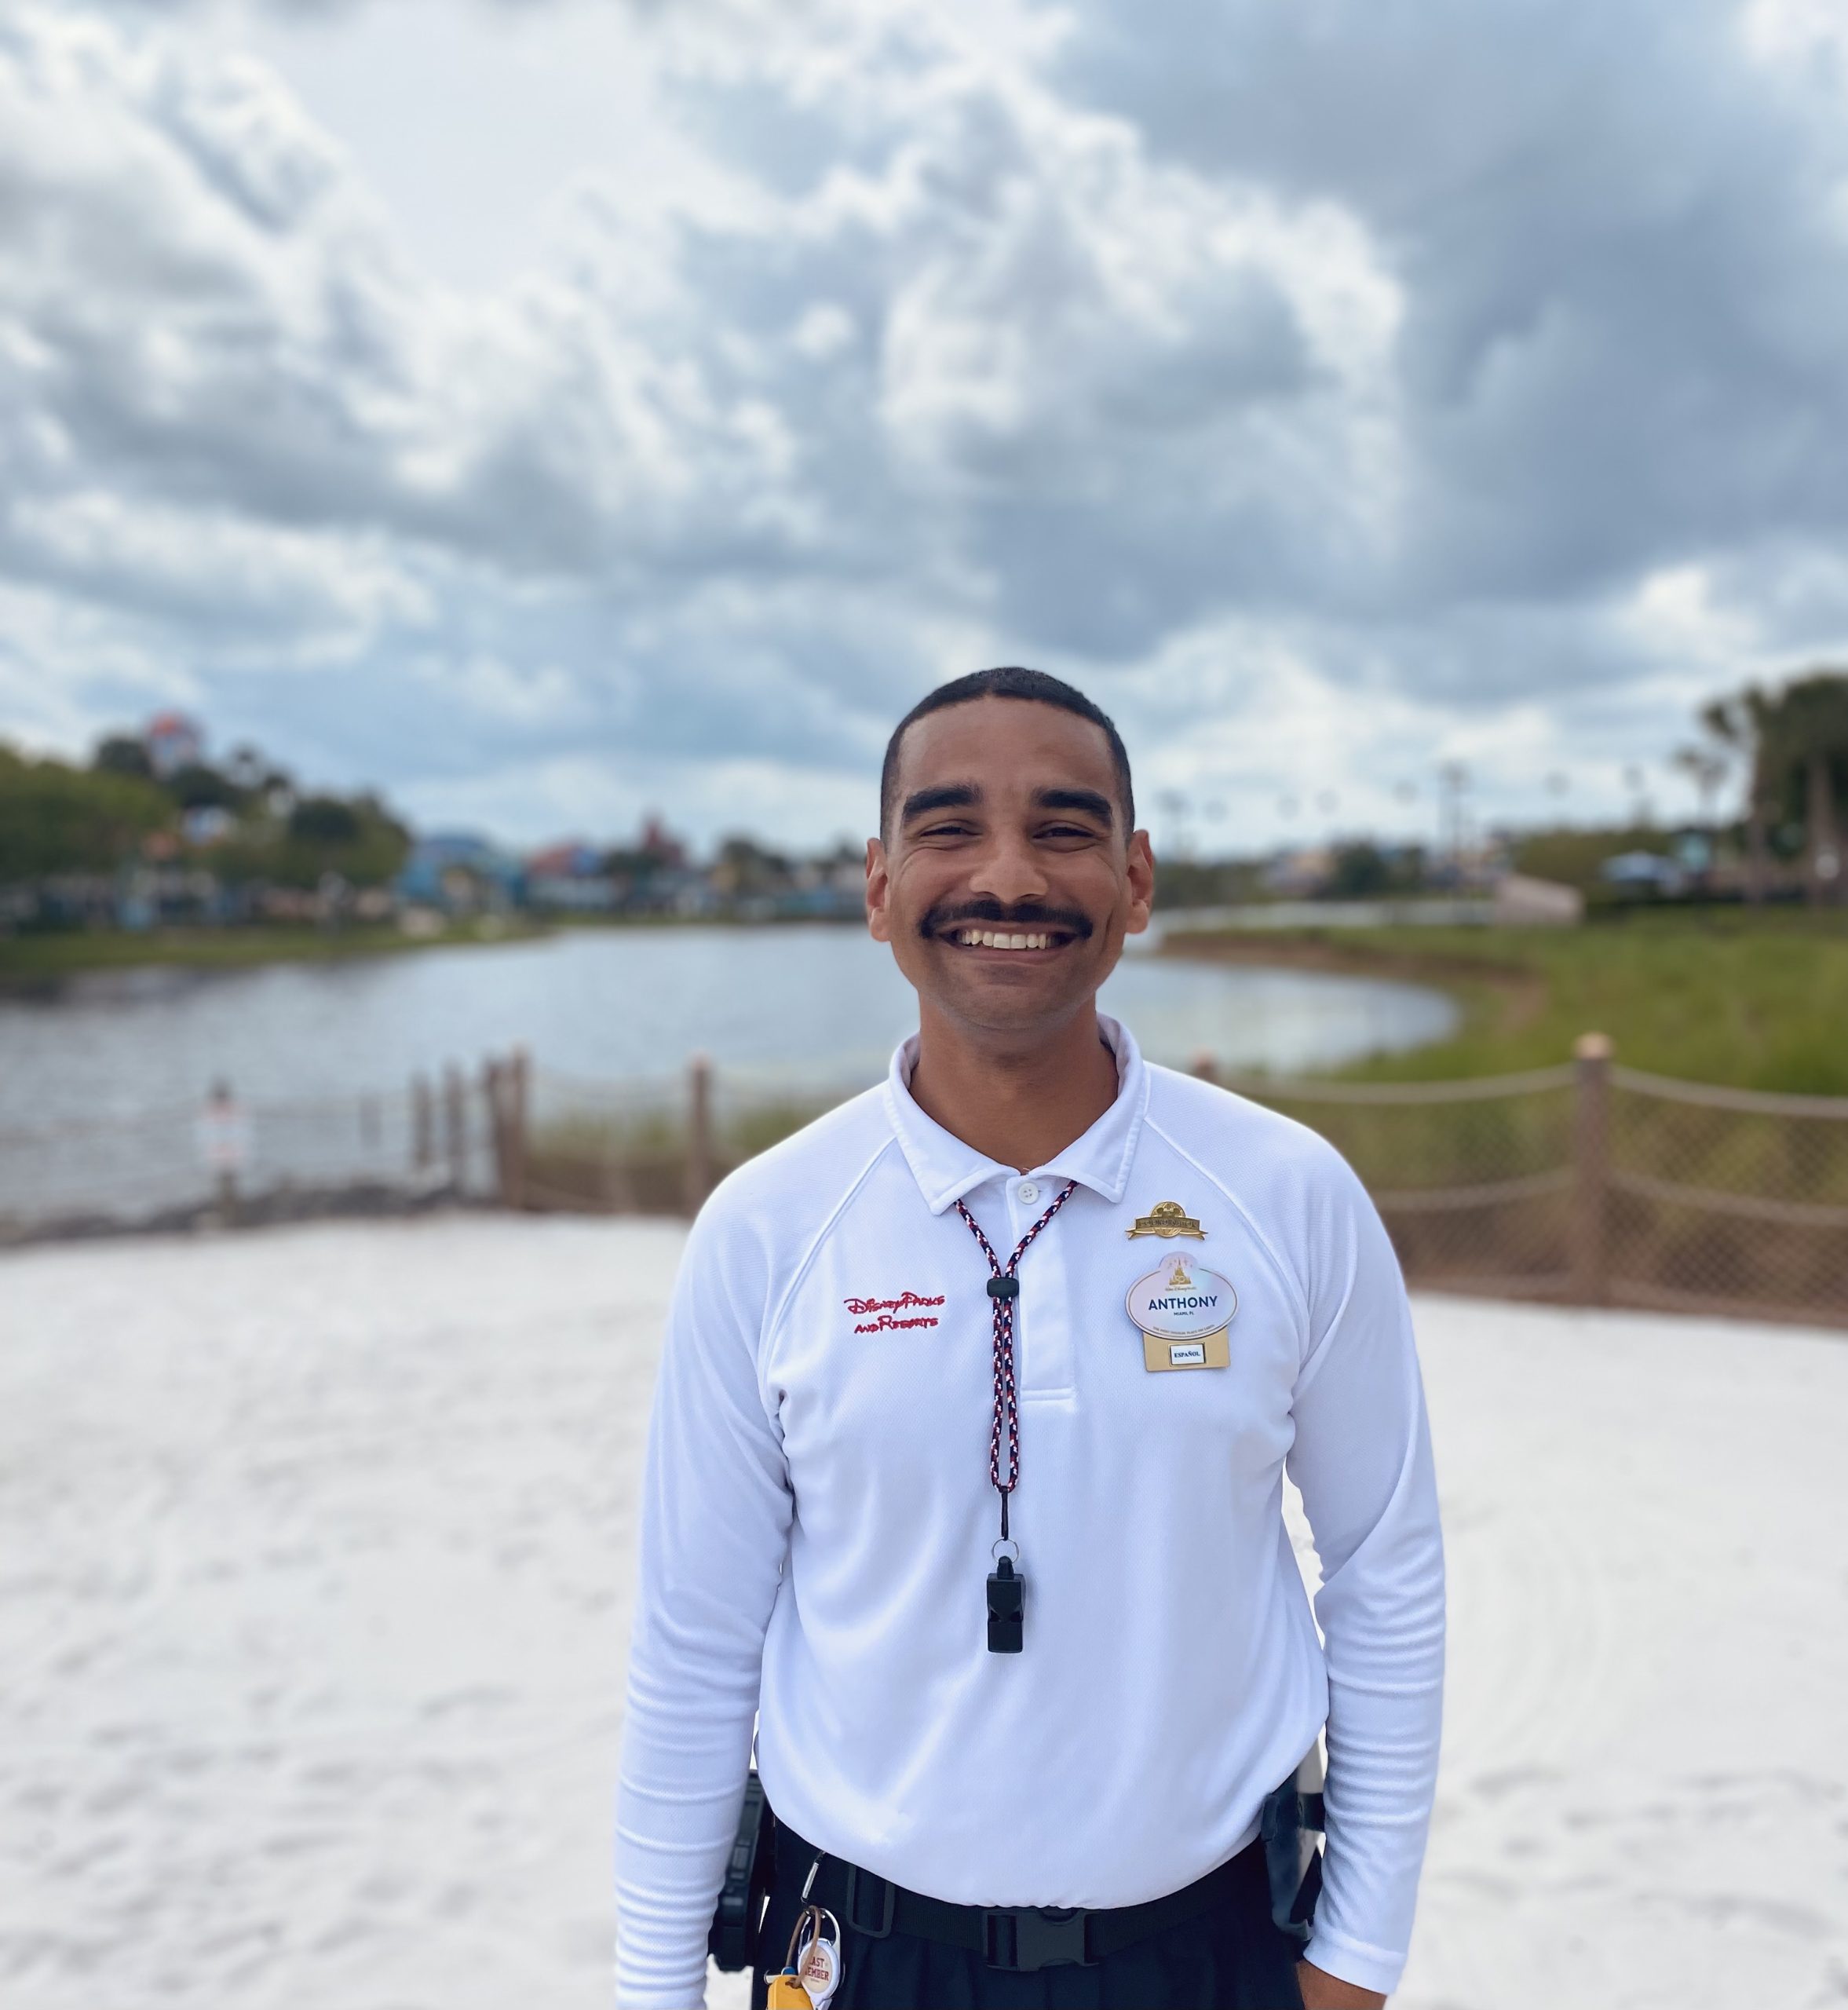 Walt Disney World Recreation Coordinator standing on a beach